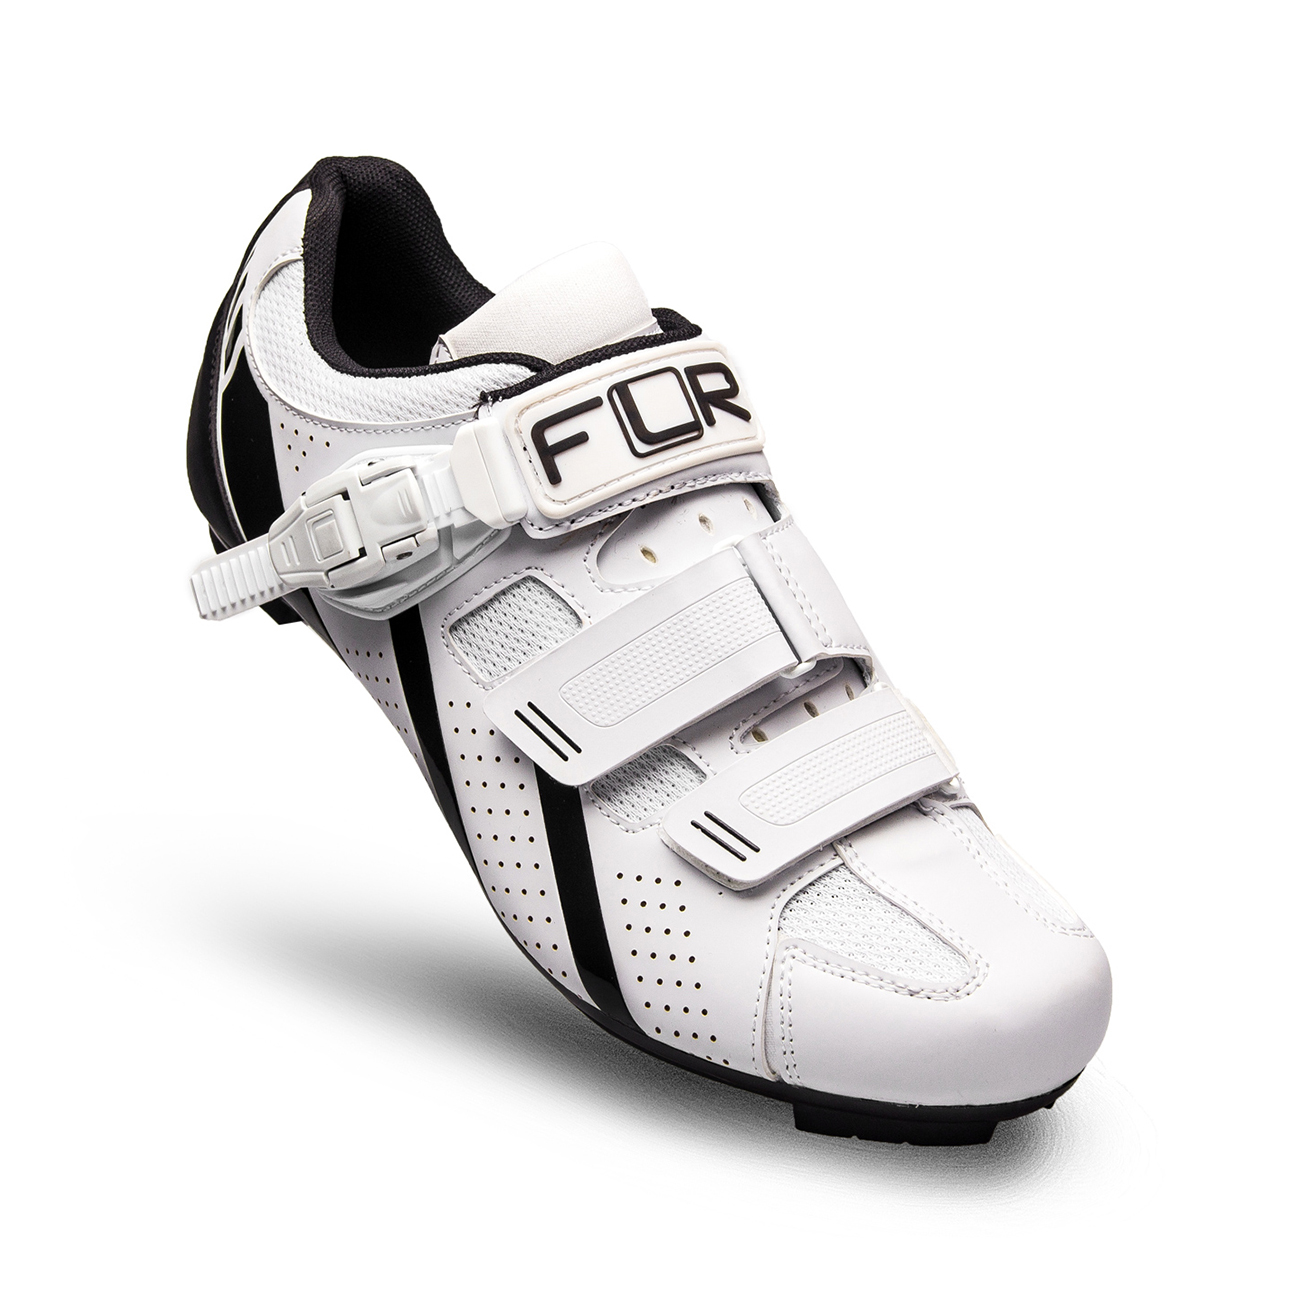 
                FLR Cyklistické tretry - F15 - čierna/biela 39
            